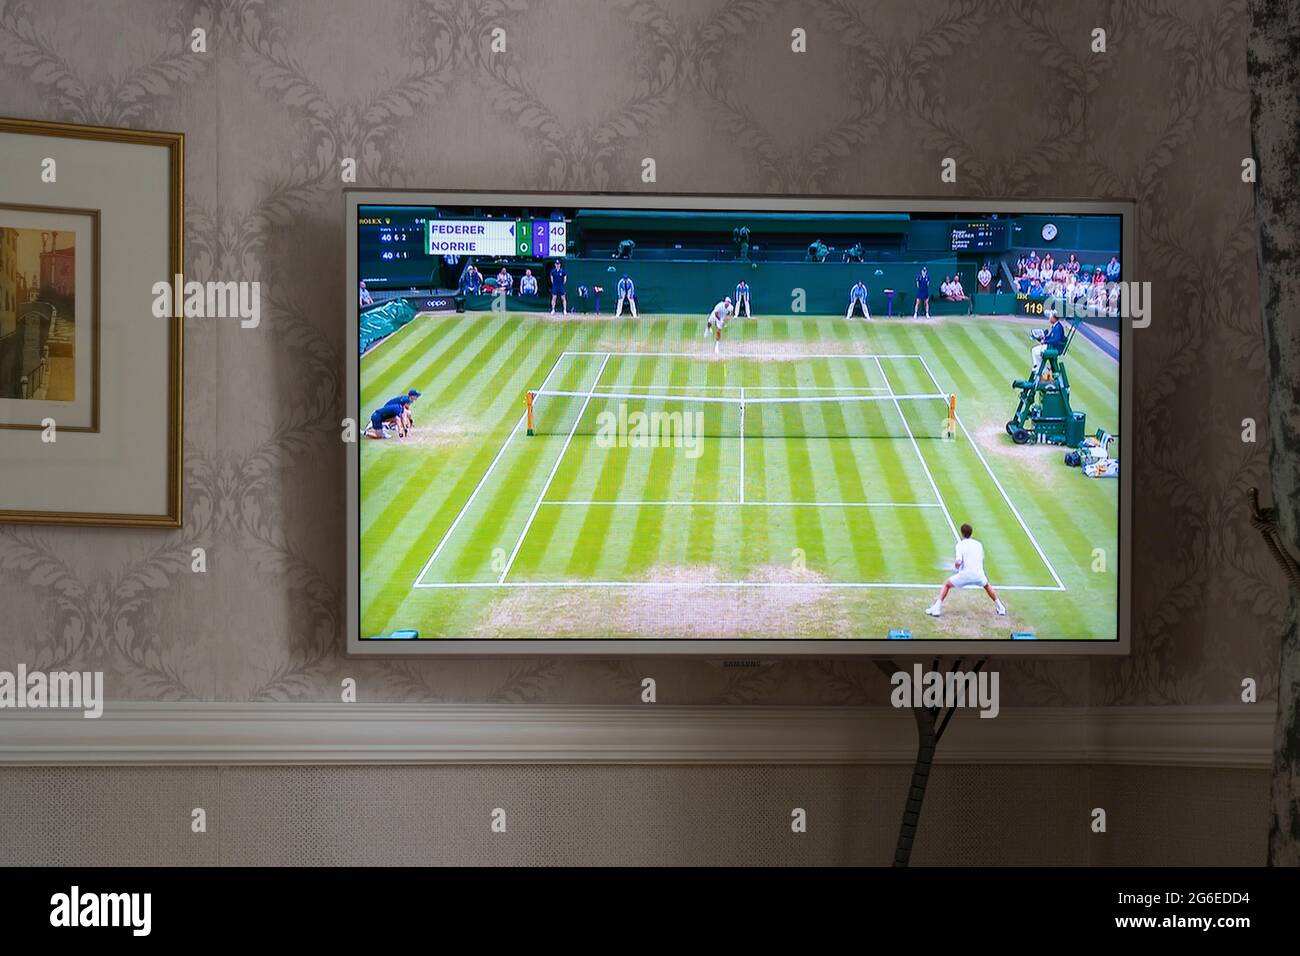 BBC-Berichterstattung über Wimbledon 2021 auf einem Flachbildfernseher an einer Wand in einer Lounge in einem Haus in England. Das angezeigte Spiel ist Federer vs Norrie. Juli 2021 Stockfoto